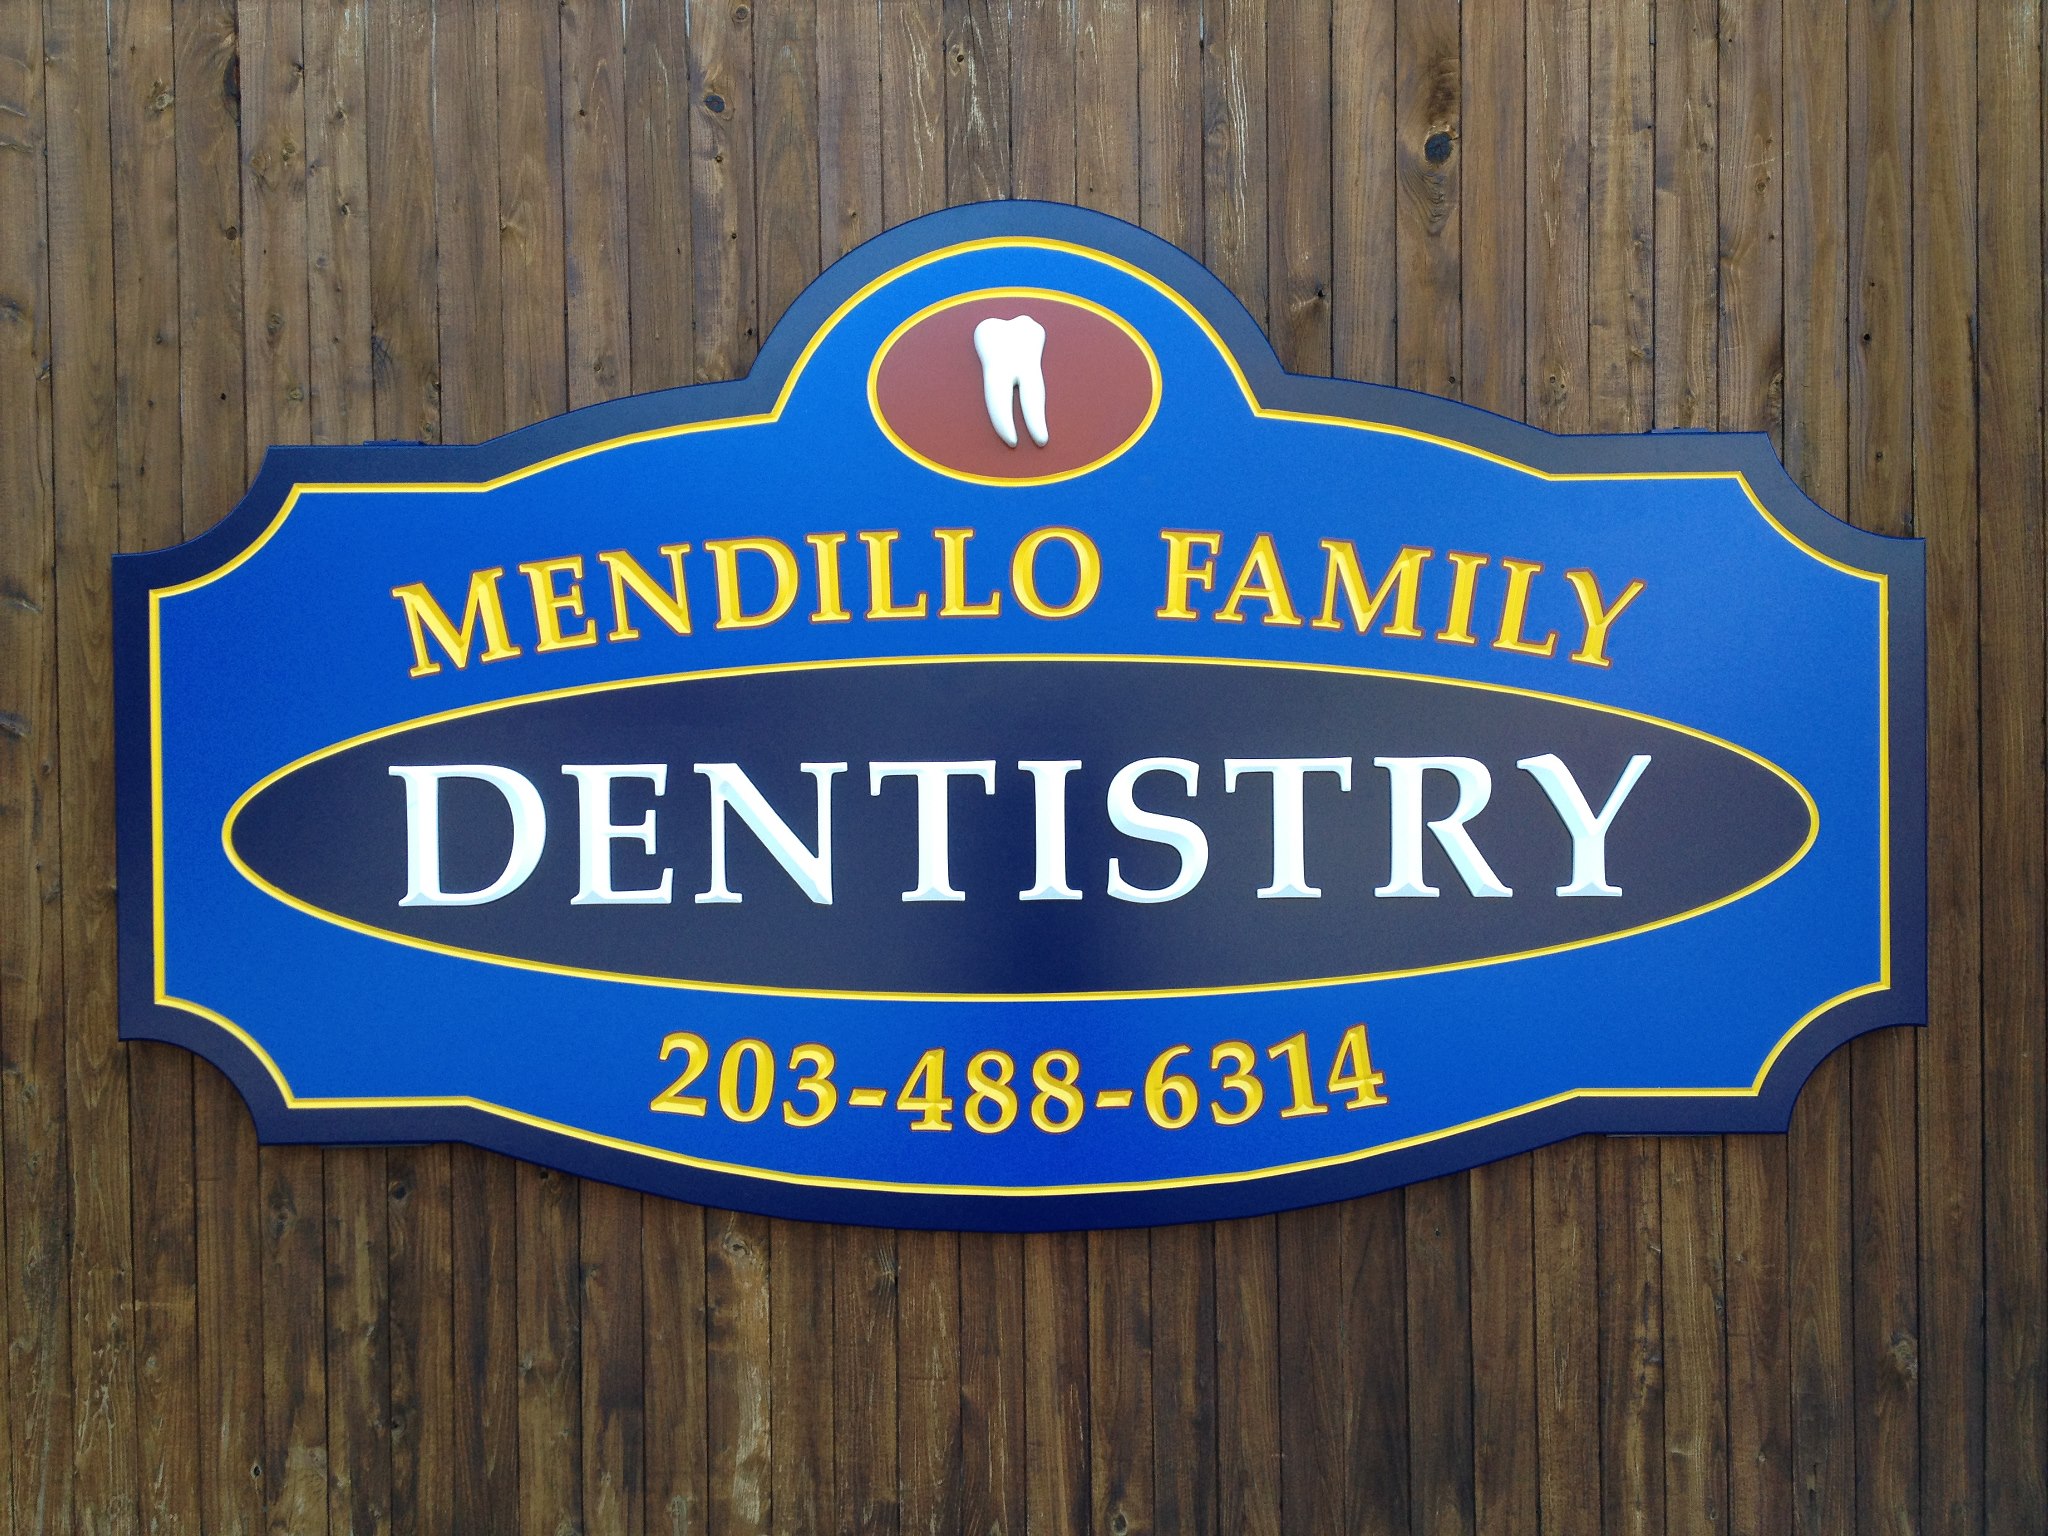 Company logo of Mendillo Family Dentistry